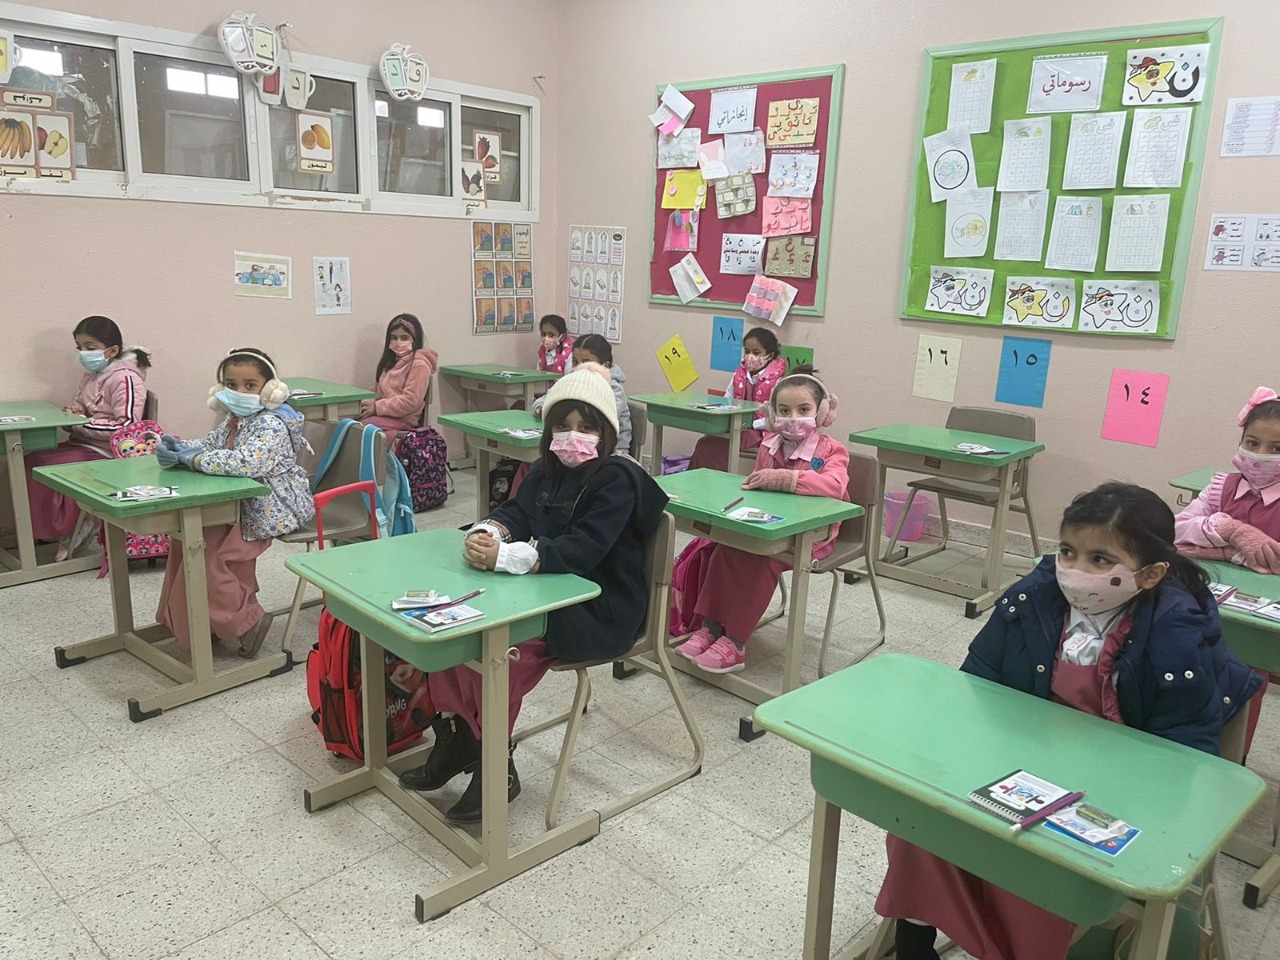 جيل 2020 يدخل المدرسة بلا ذكريات "أول يوم دراسي" | اندبندنت عربية